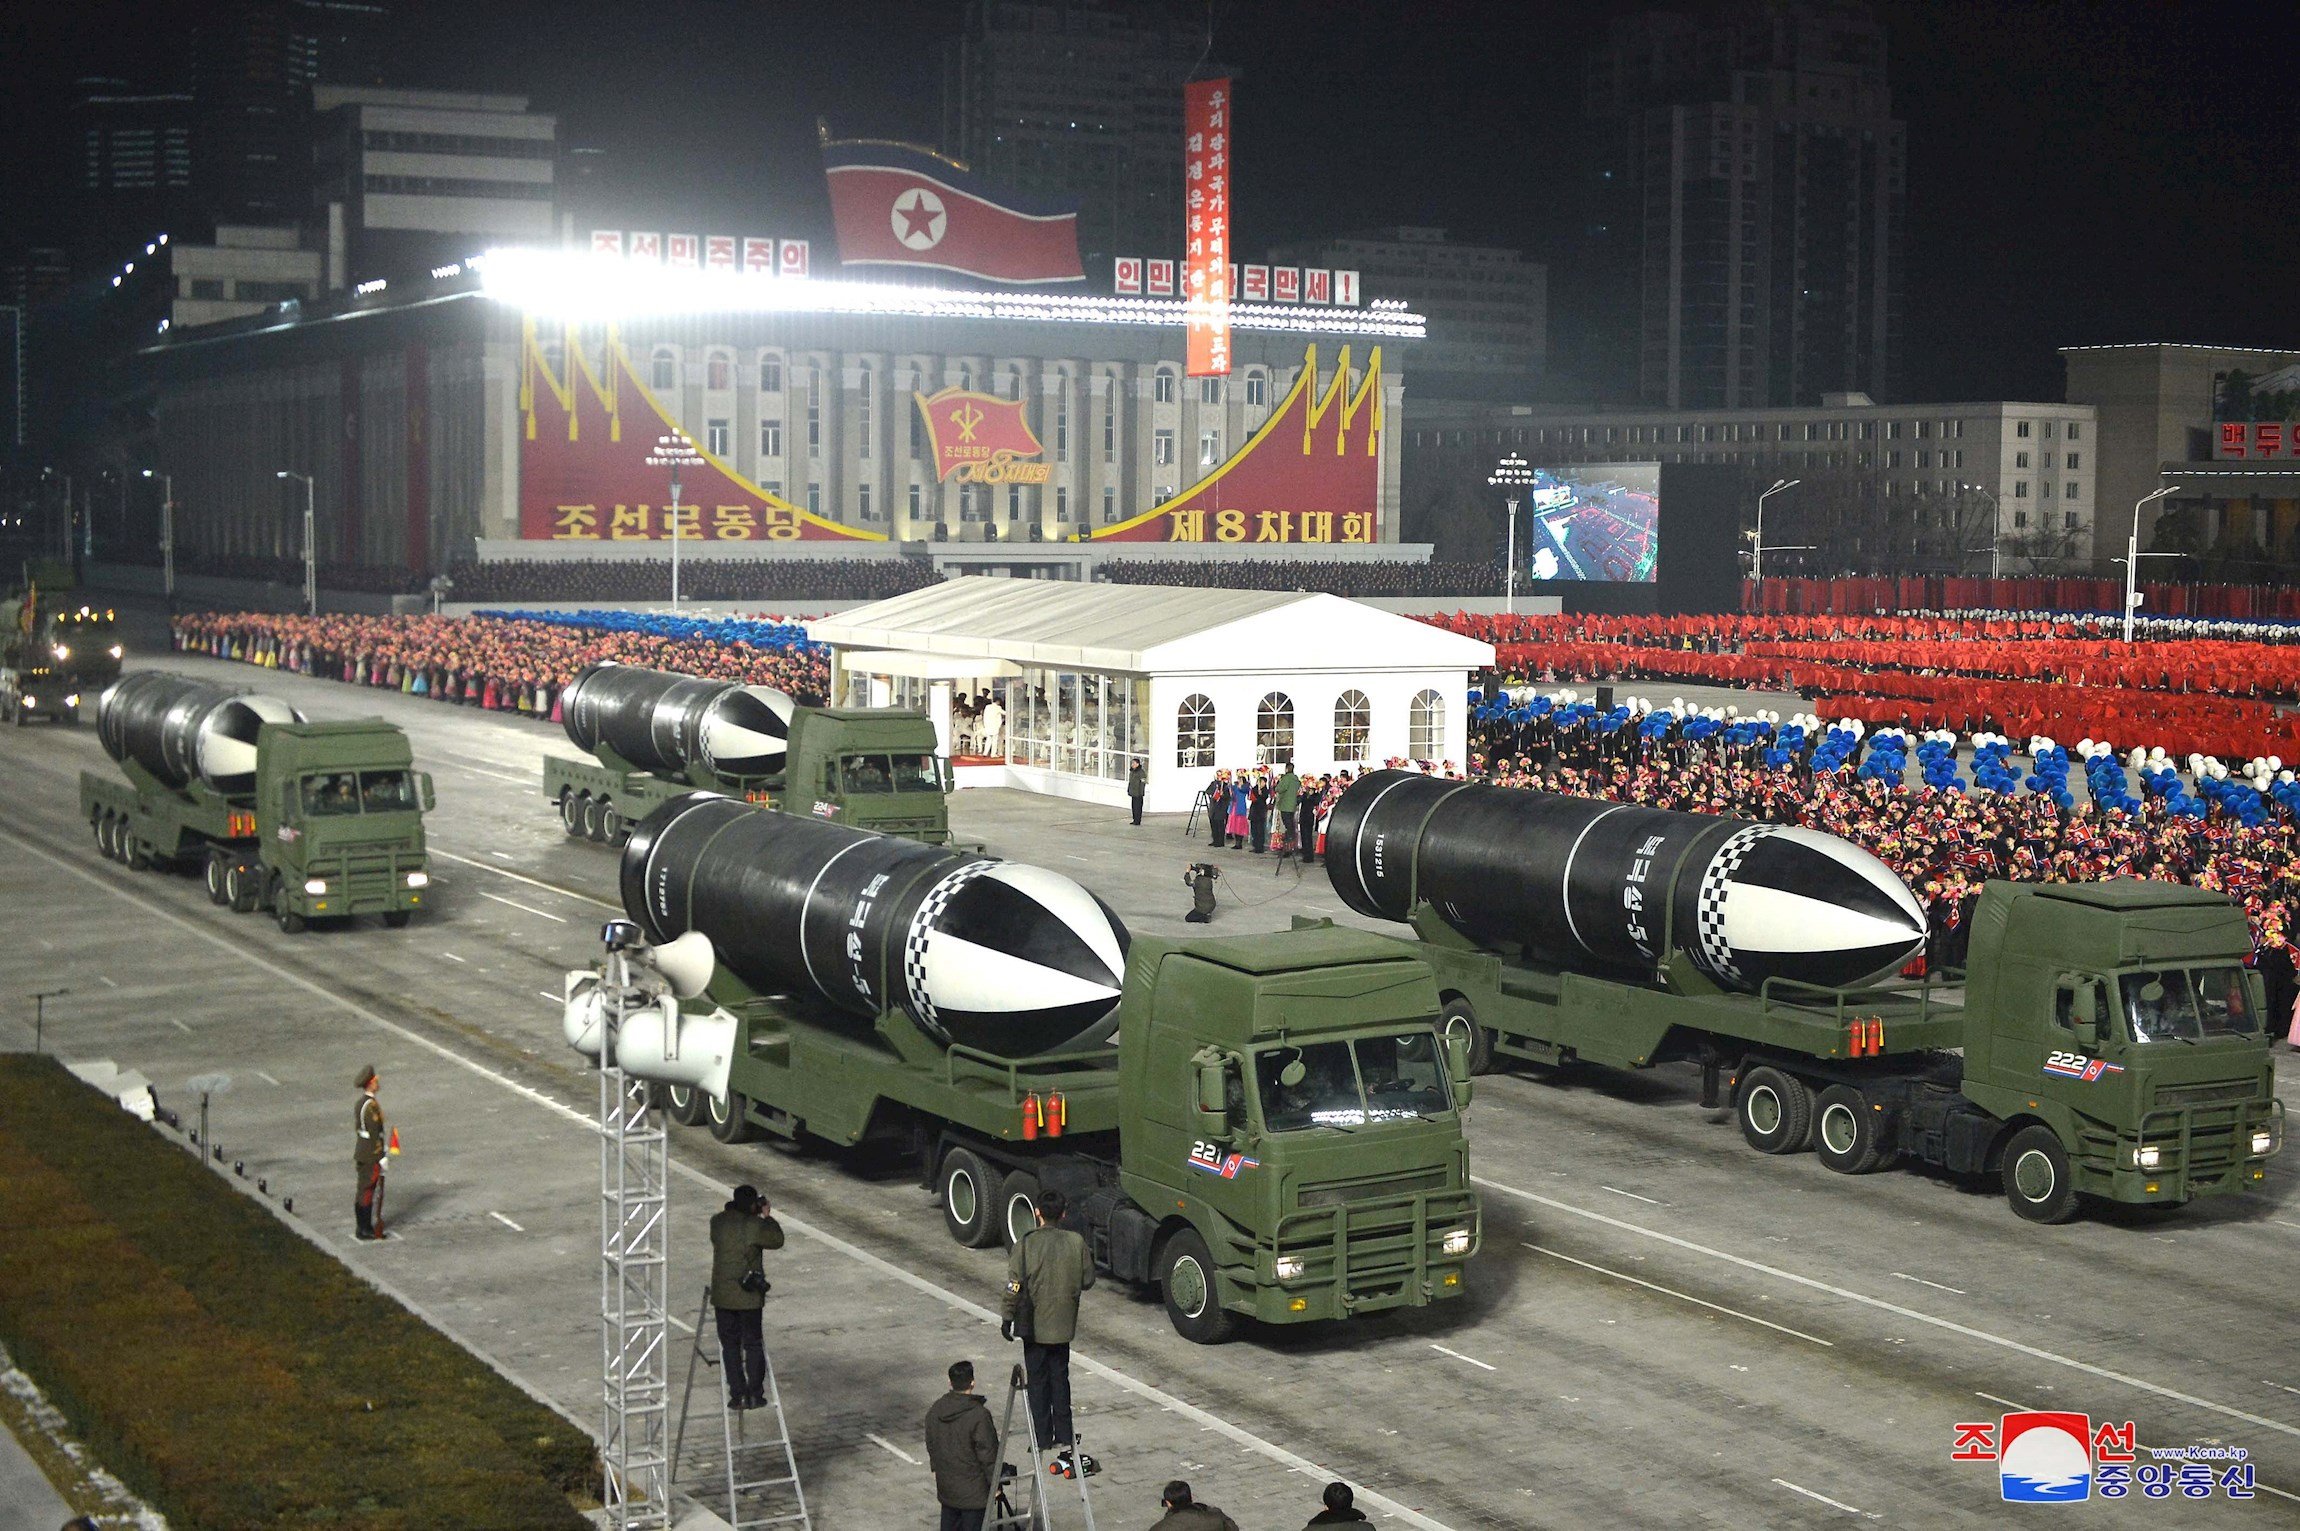 Corea del Norte exhibe "el arma más poderosa del mundo"